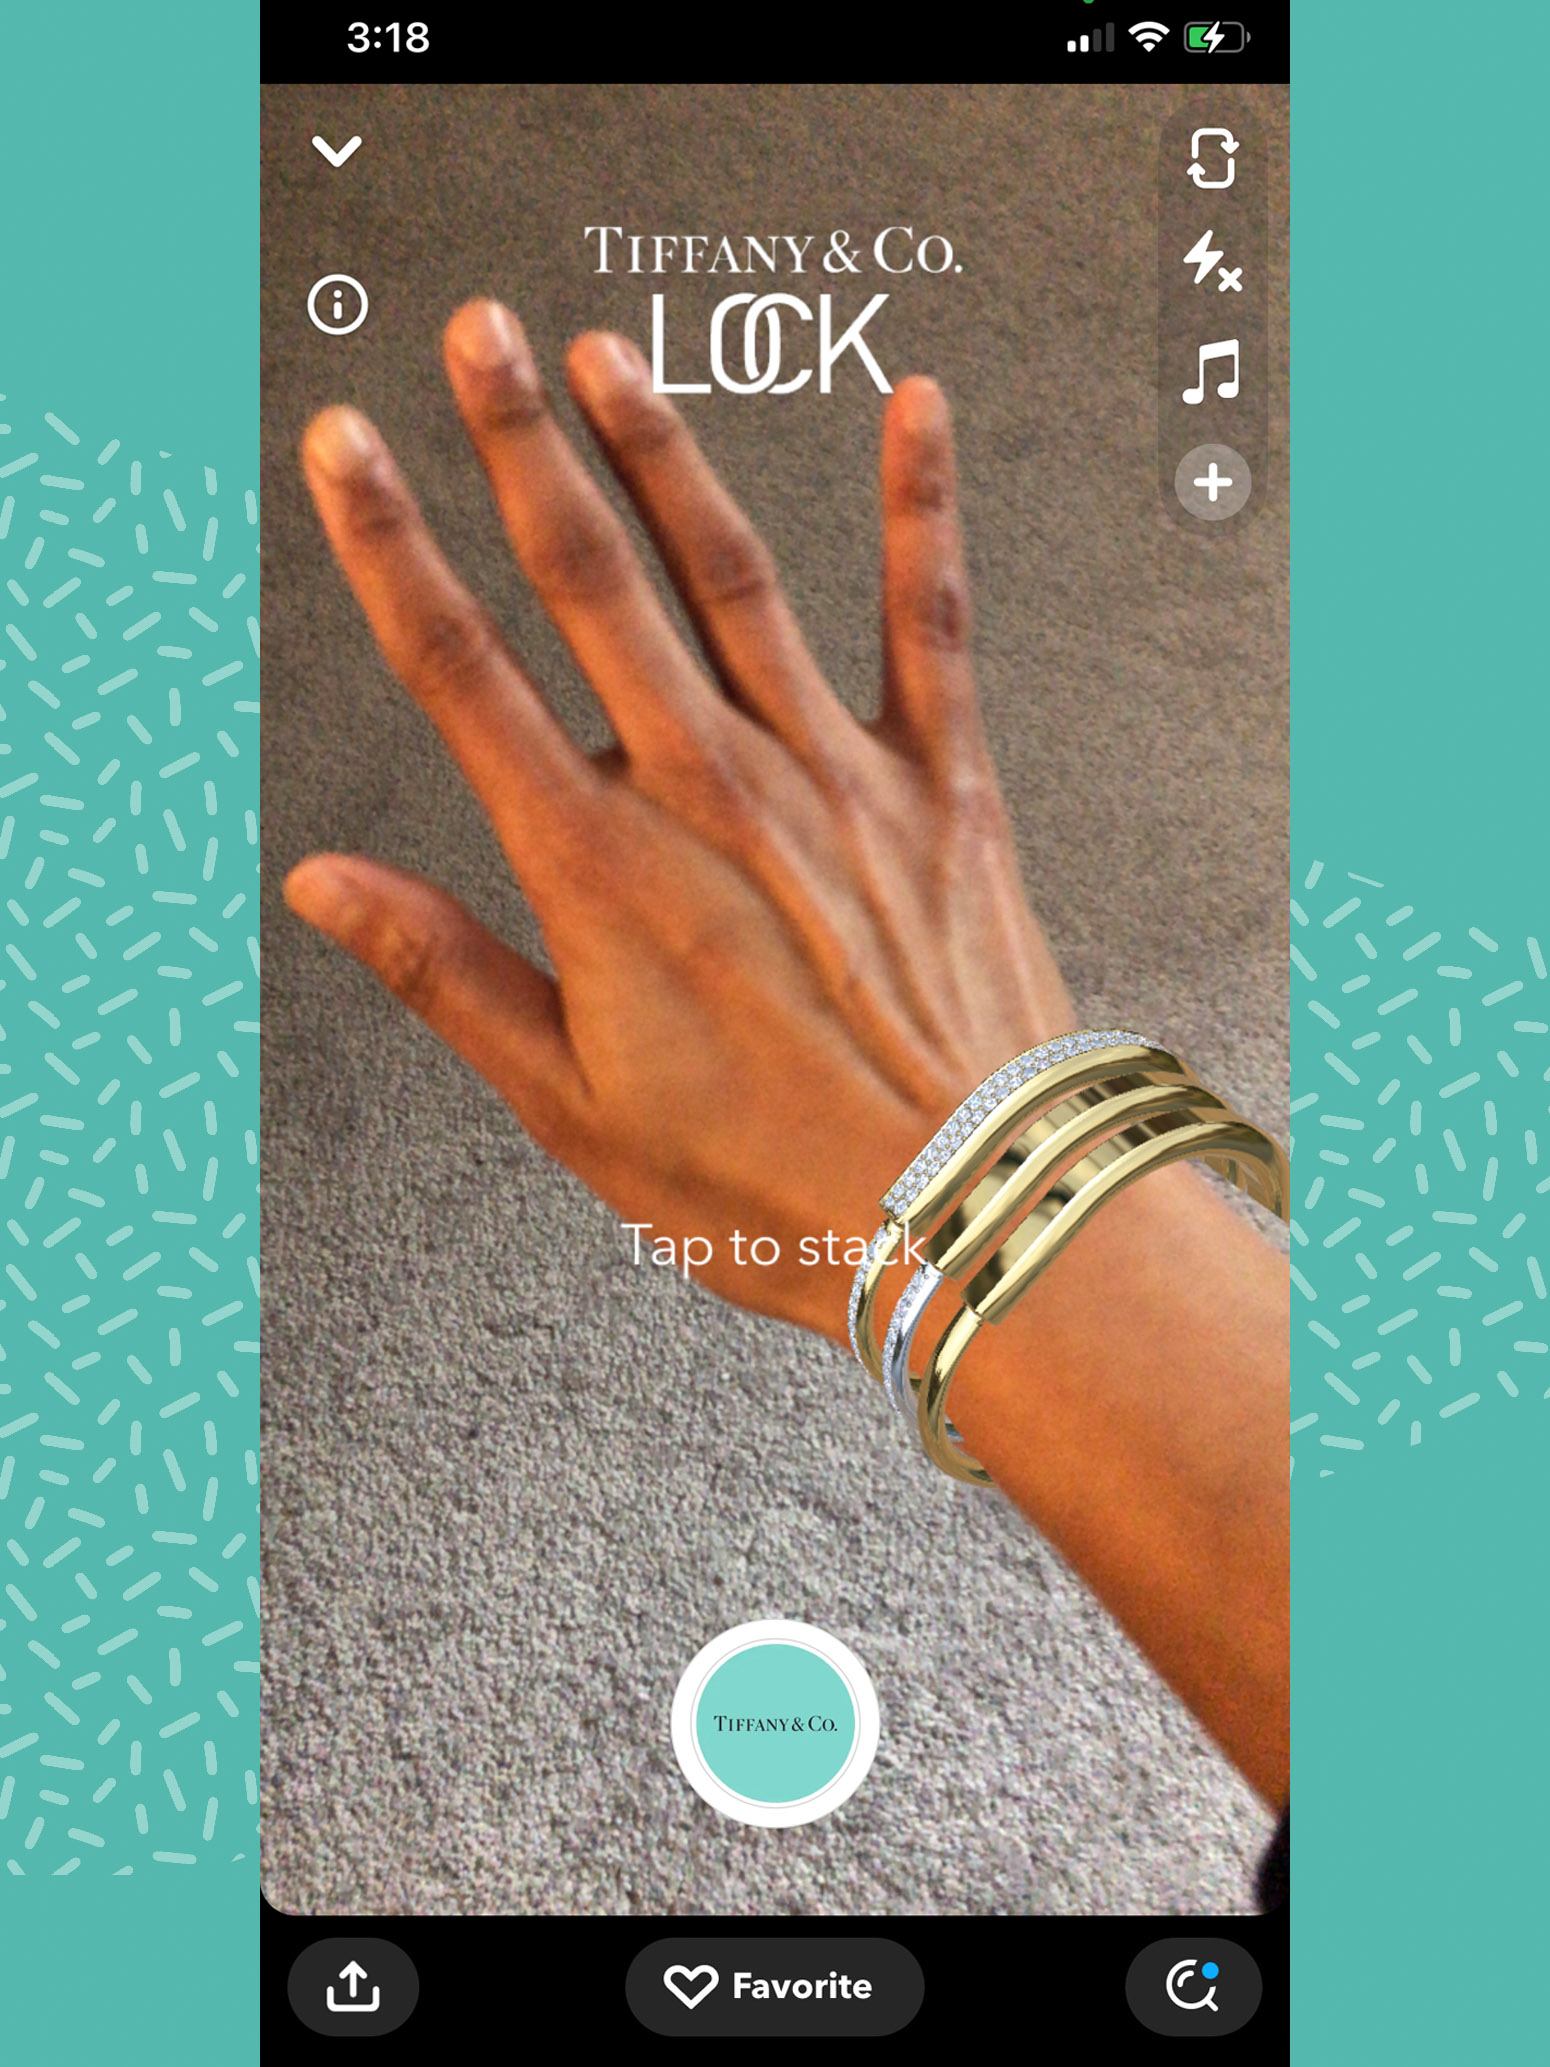 Tiffany app using AR to fit jewelry to a wrist